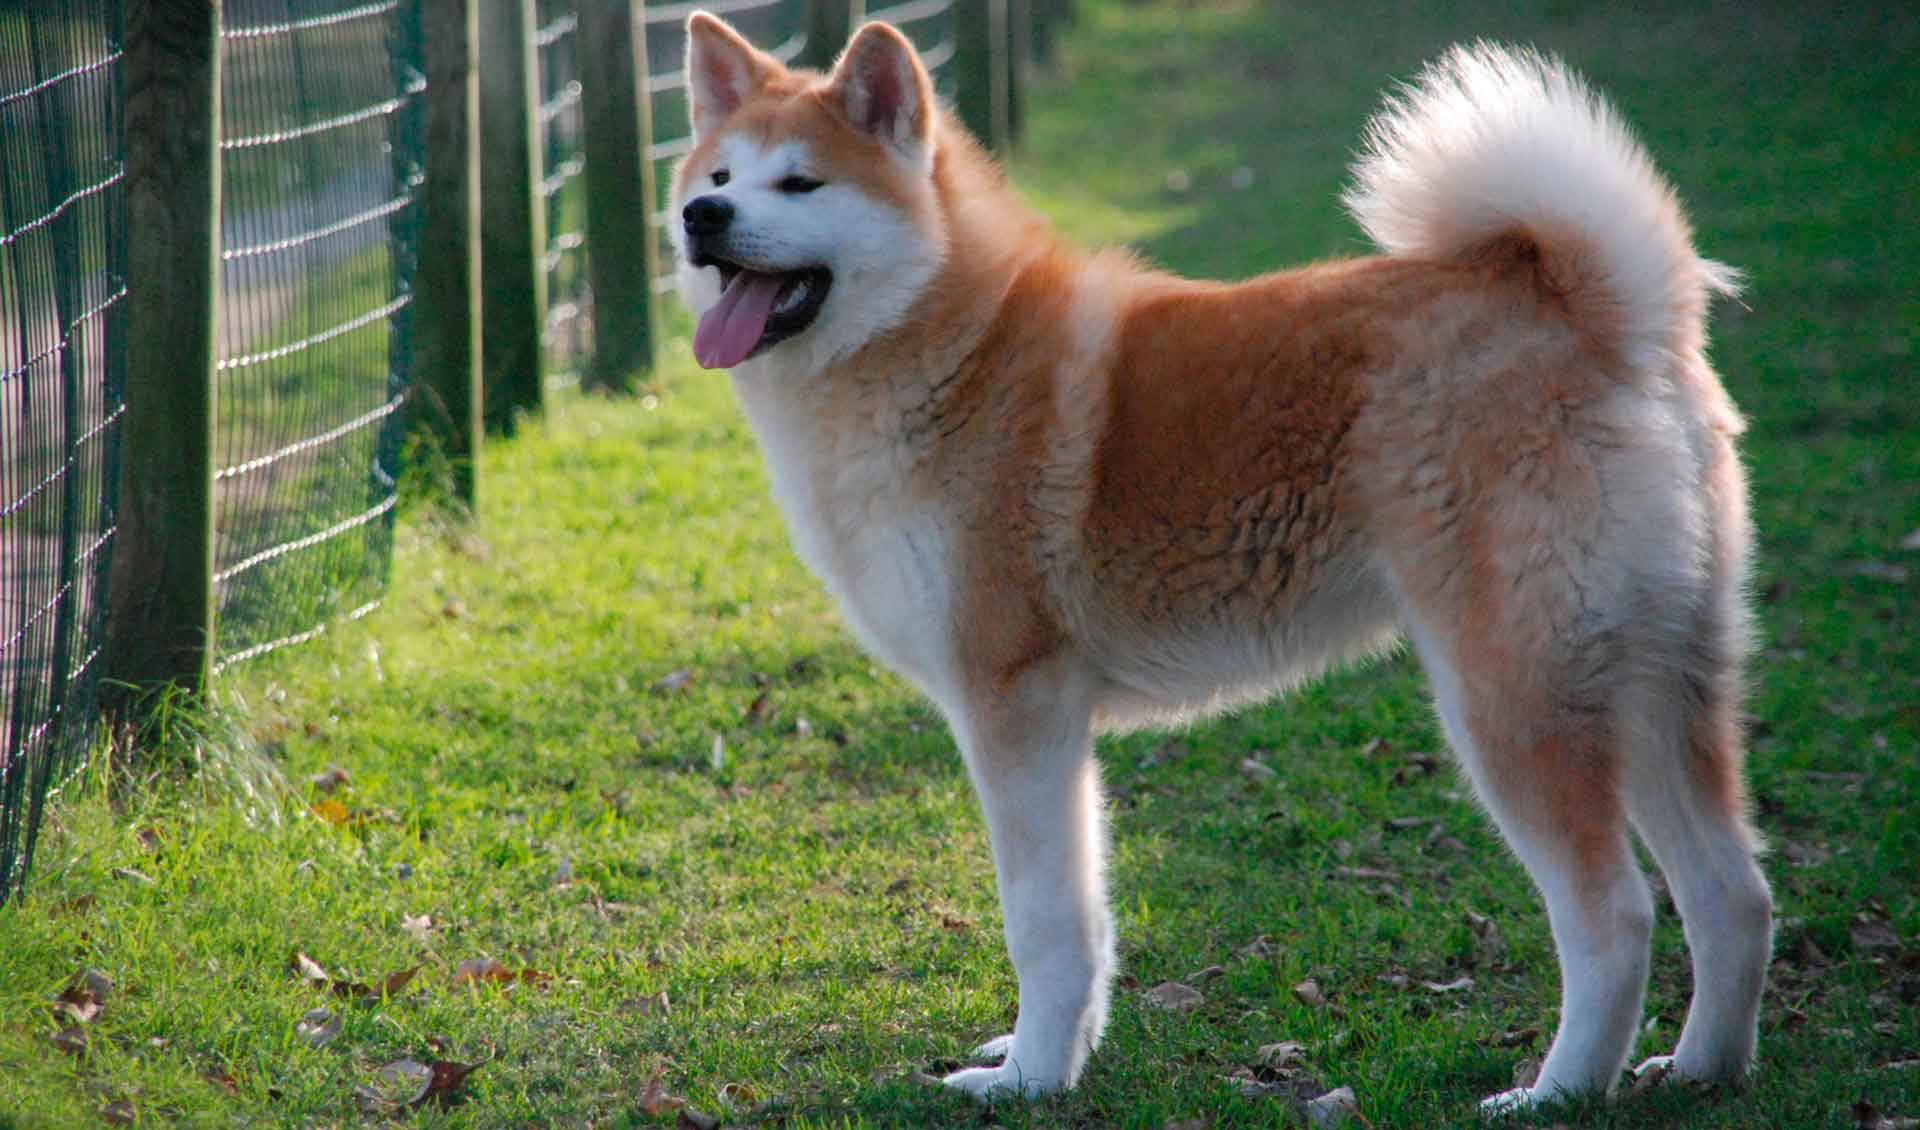 Хоккайдо (айну) – японская порода собак